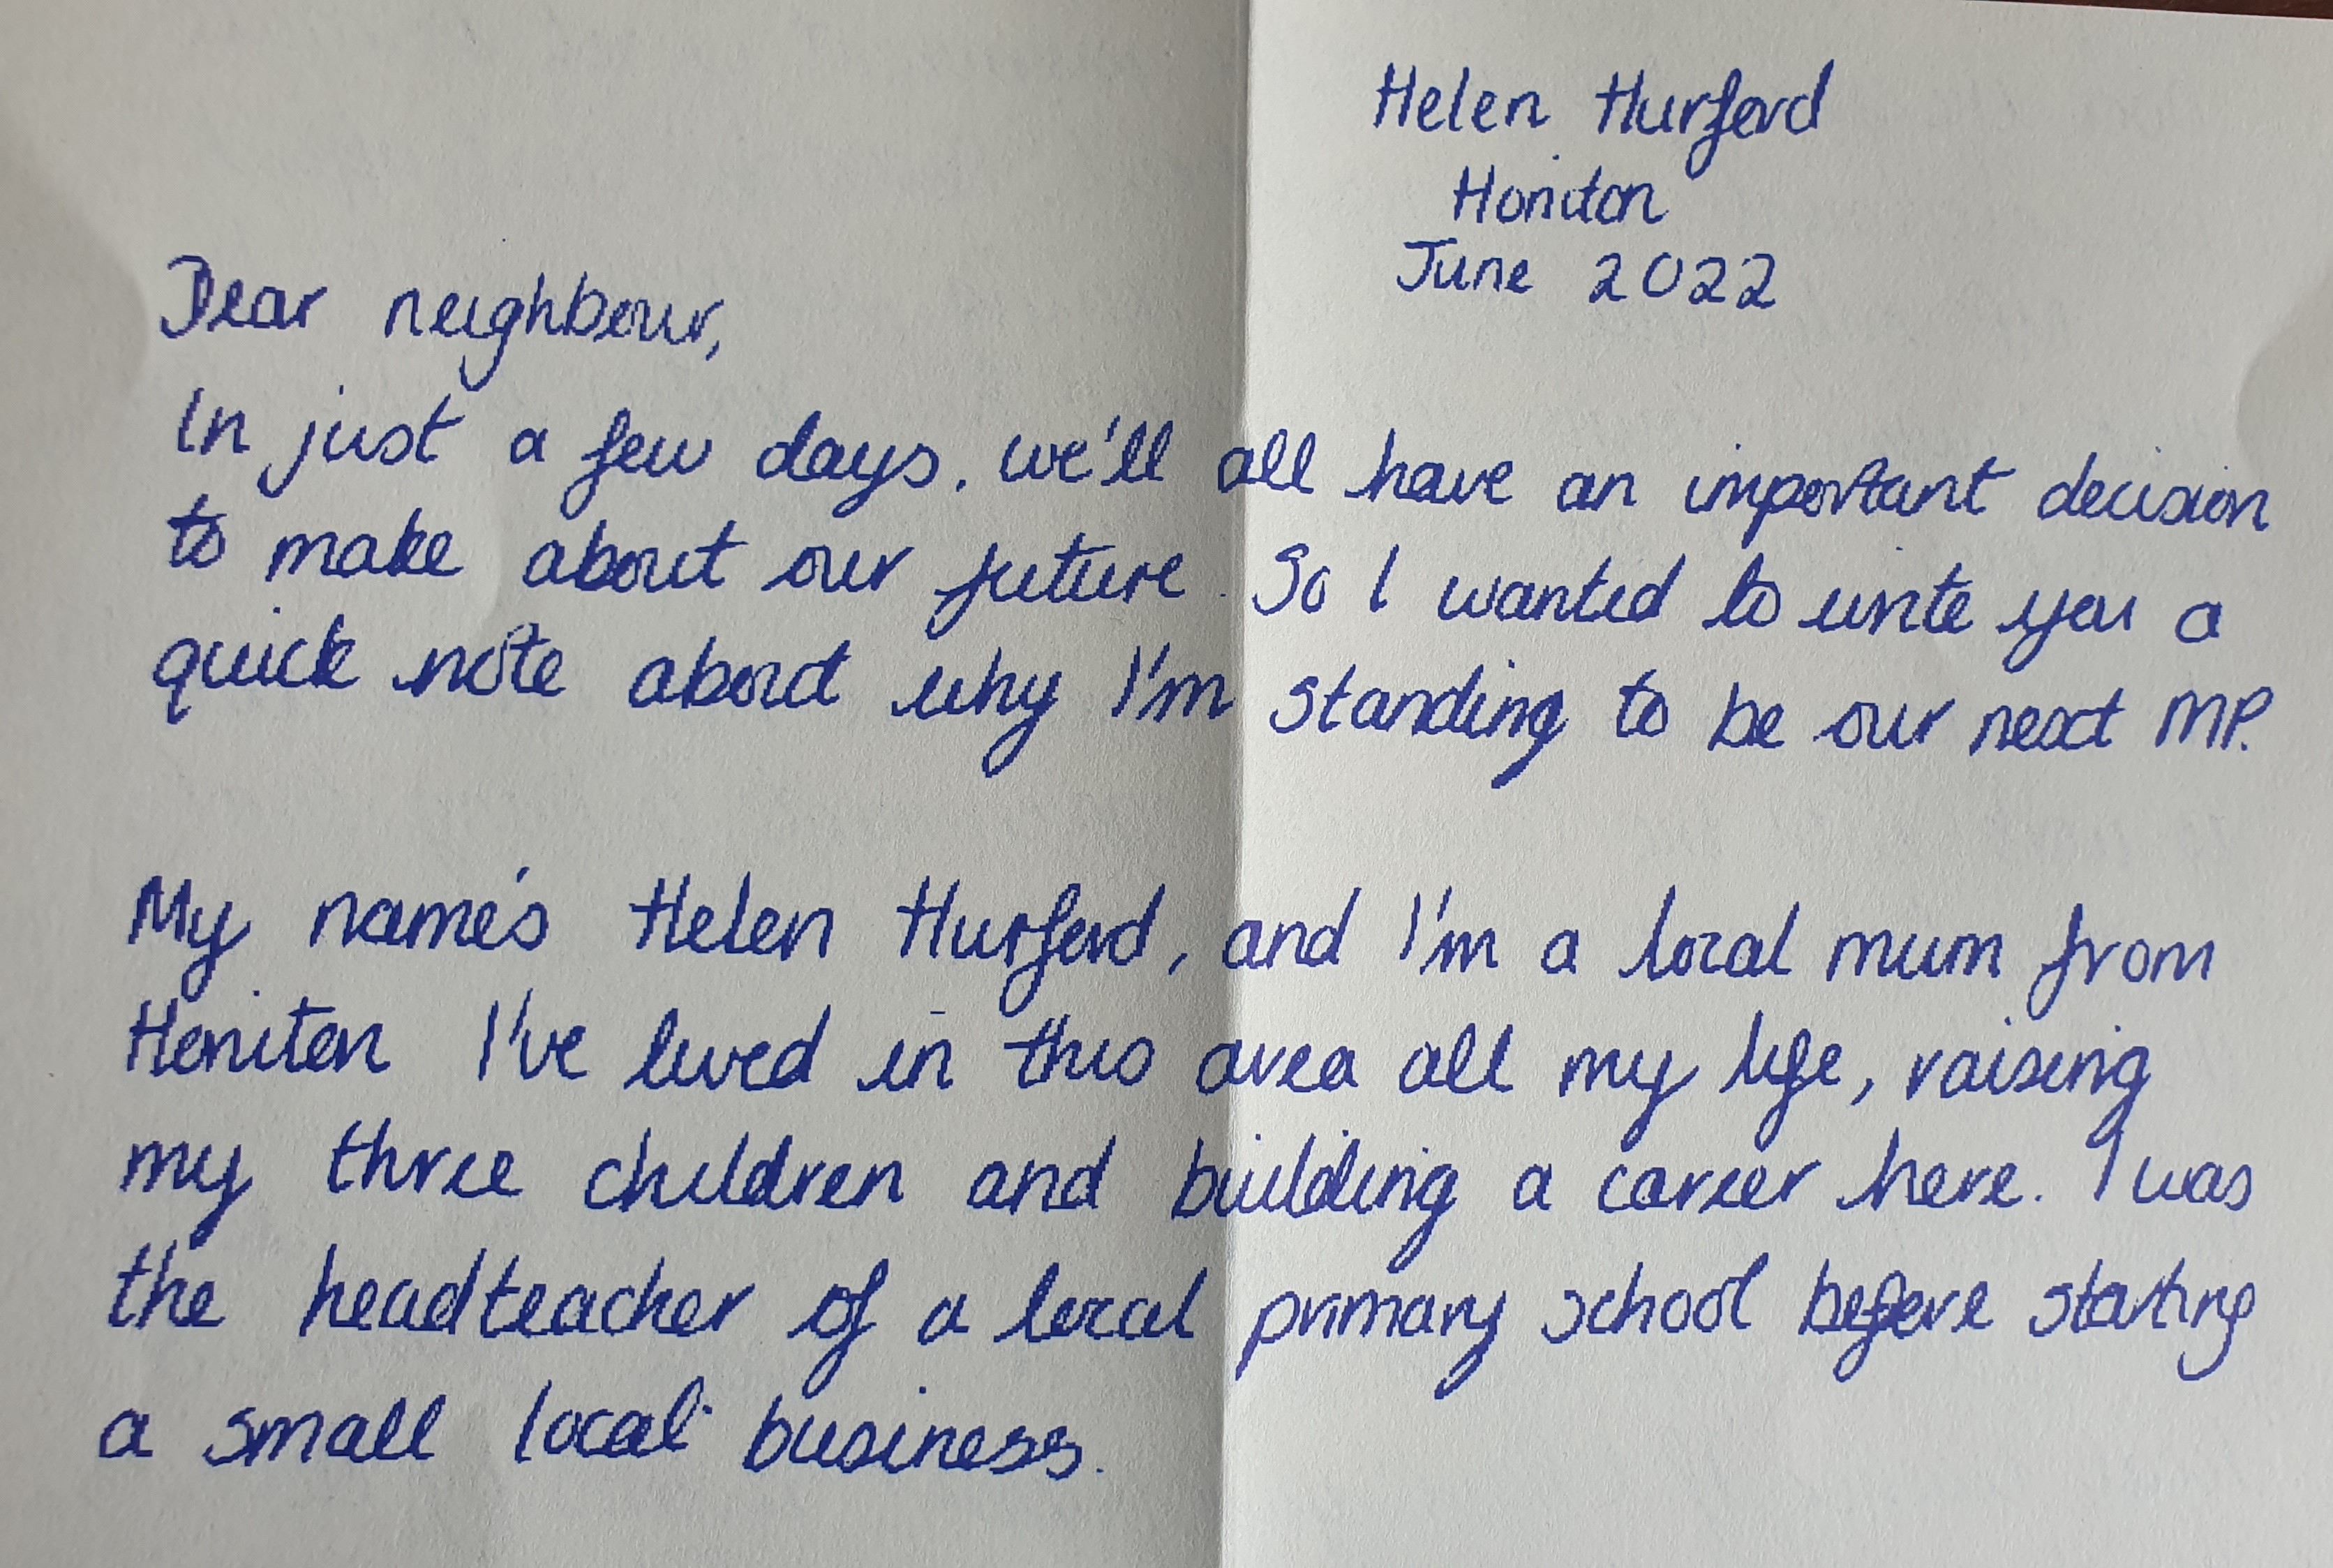 Part of Helen Hurford's letter 